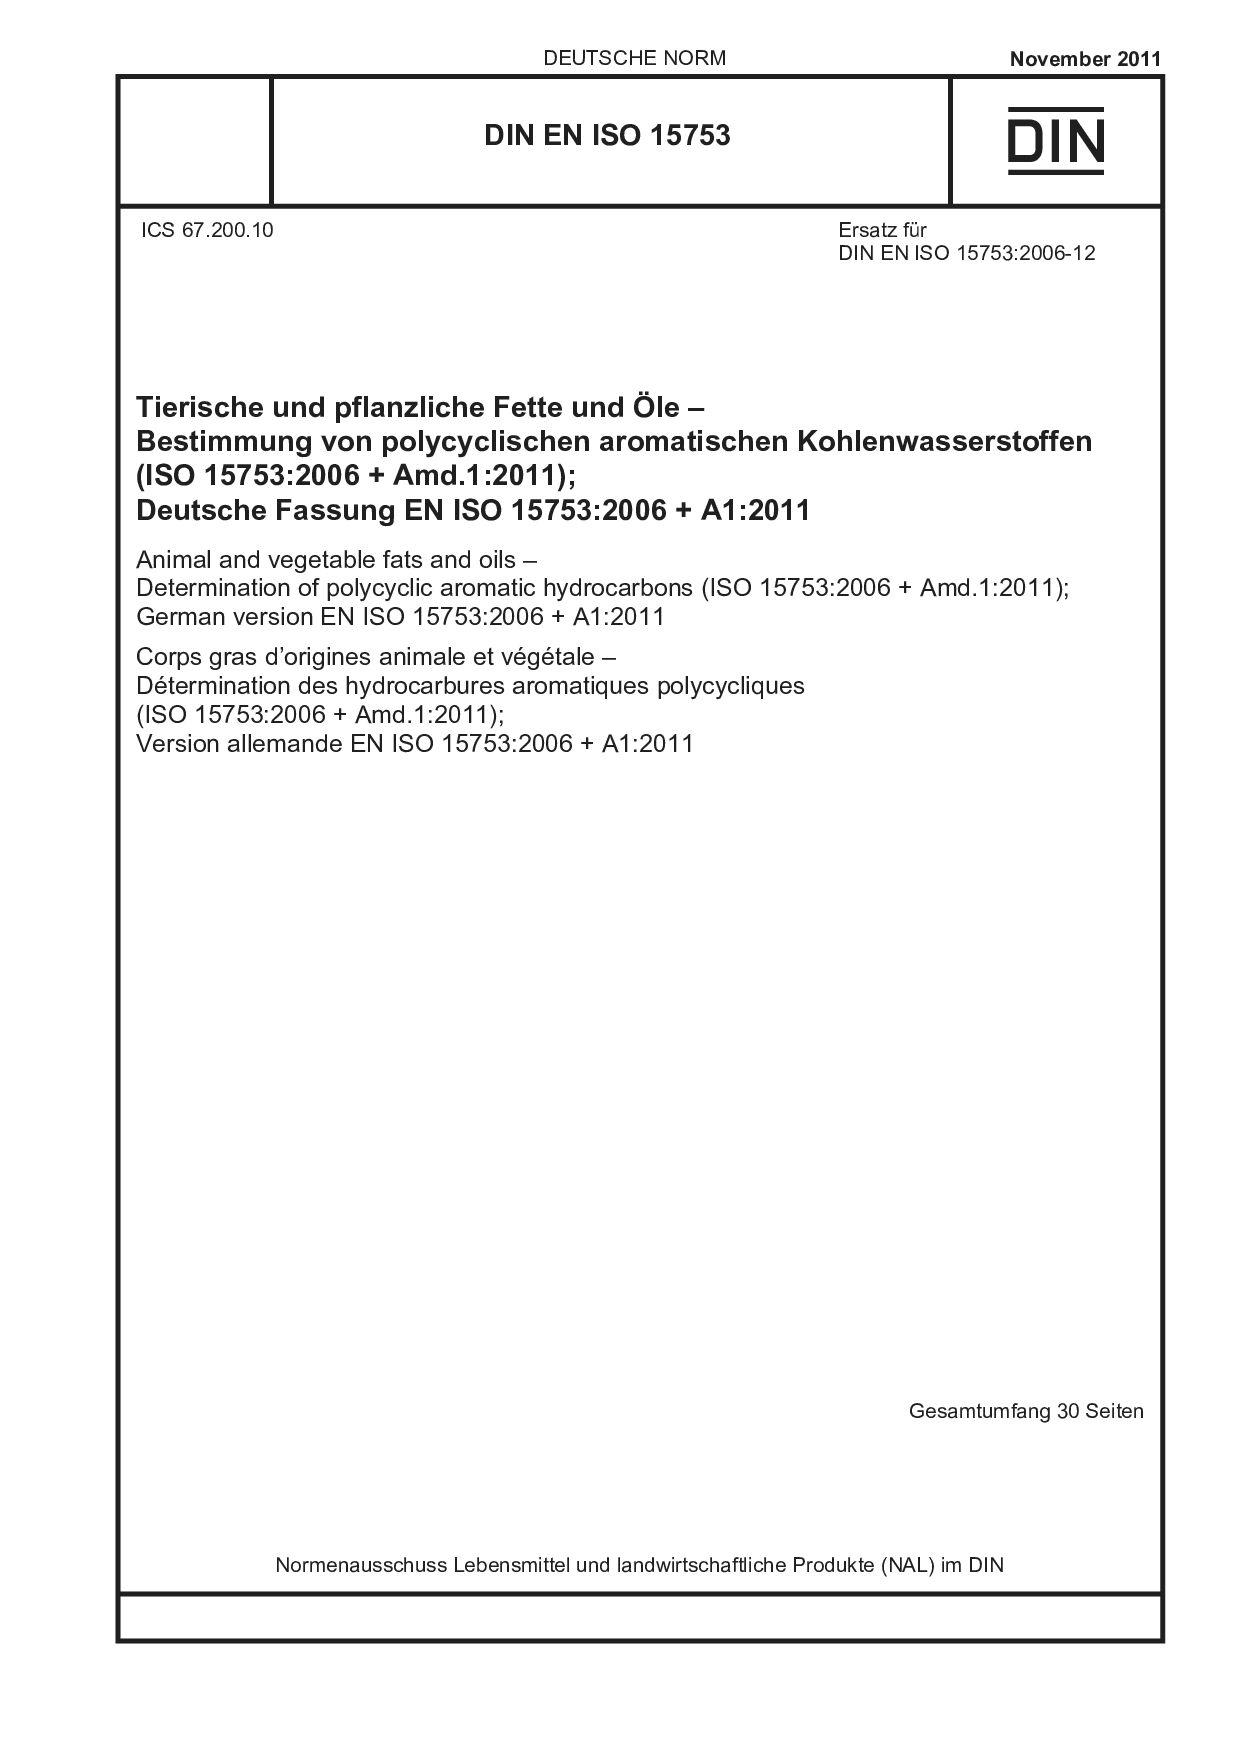 DIN EN ISO 15753:2011